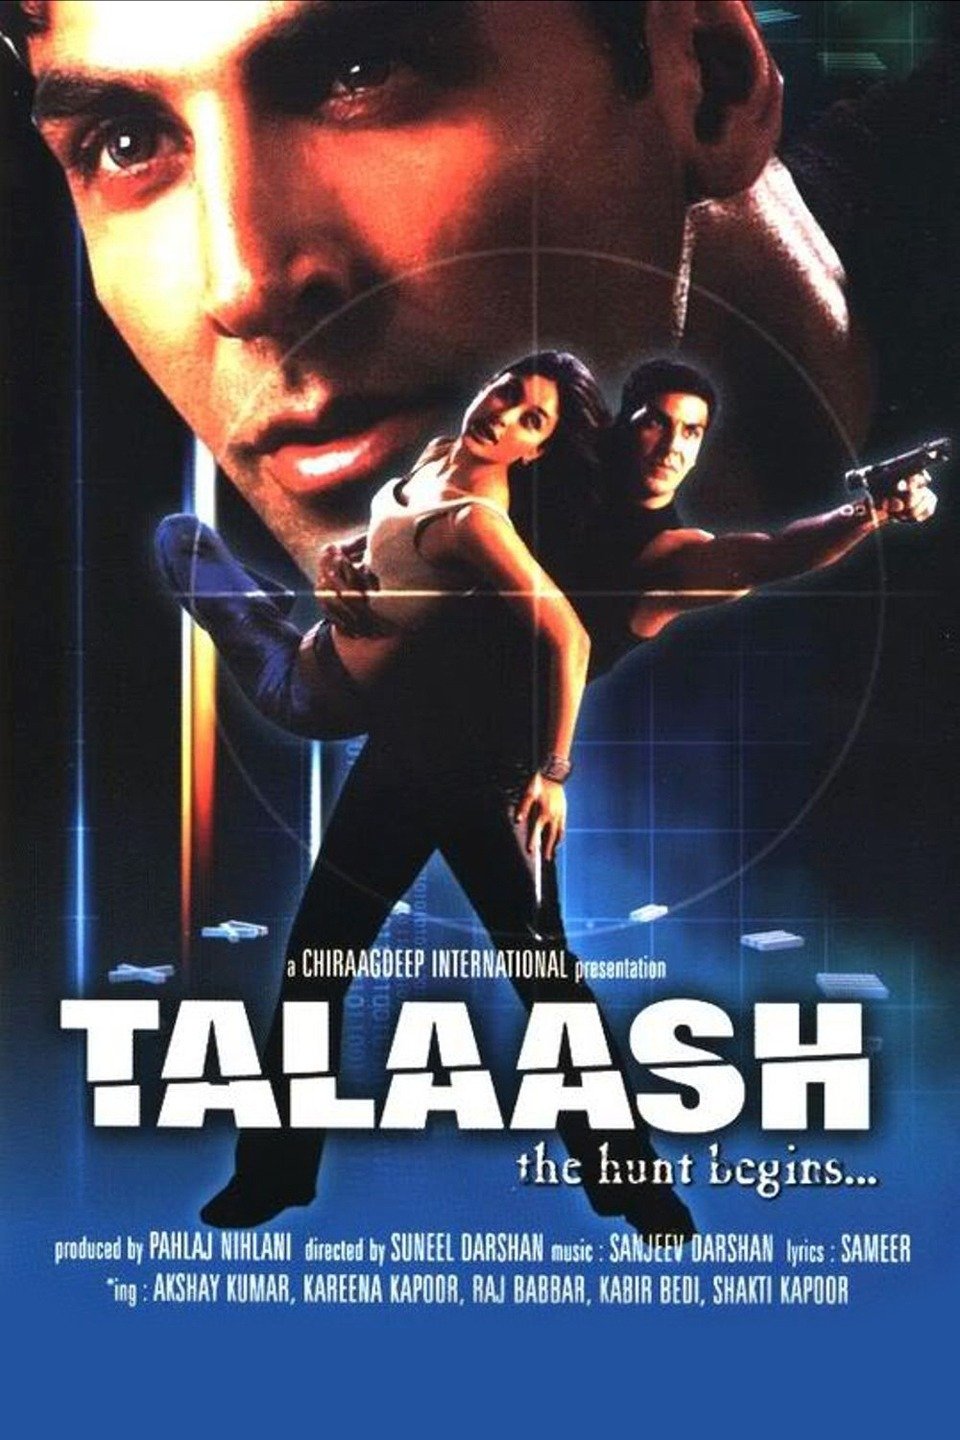 talaash movie music